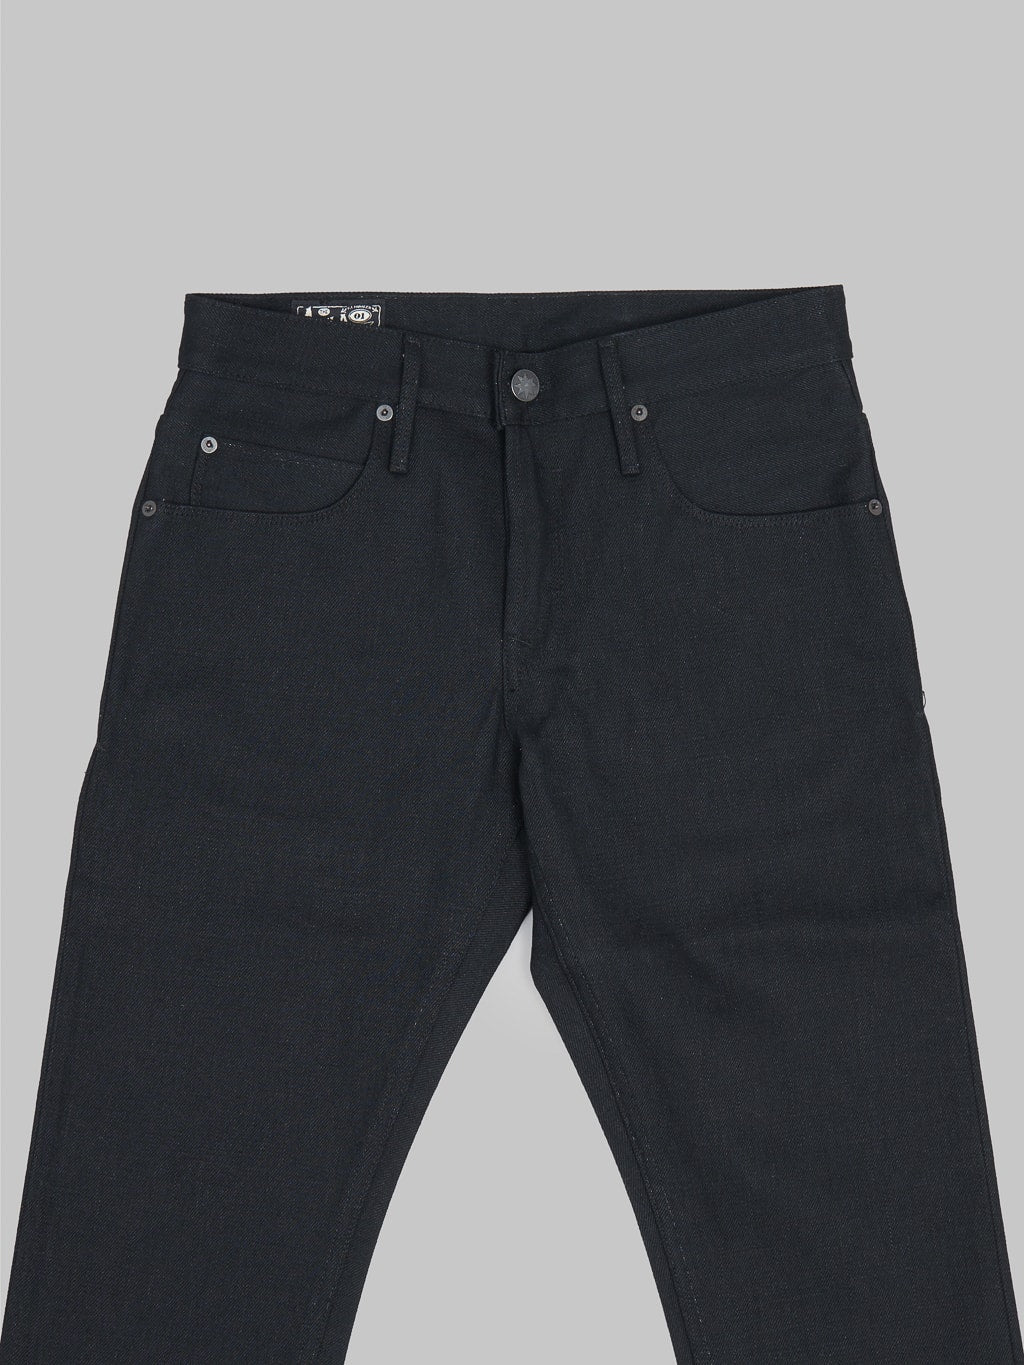 Freenote Cloth Avila 17oz Black Denim Slim Taper Jeans details